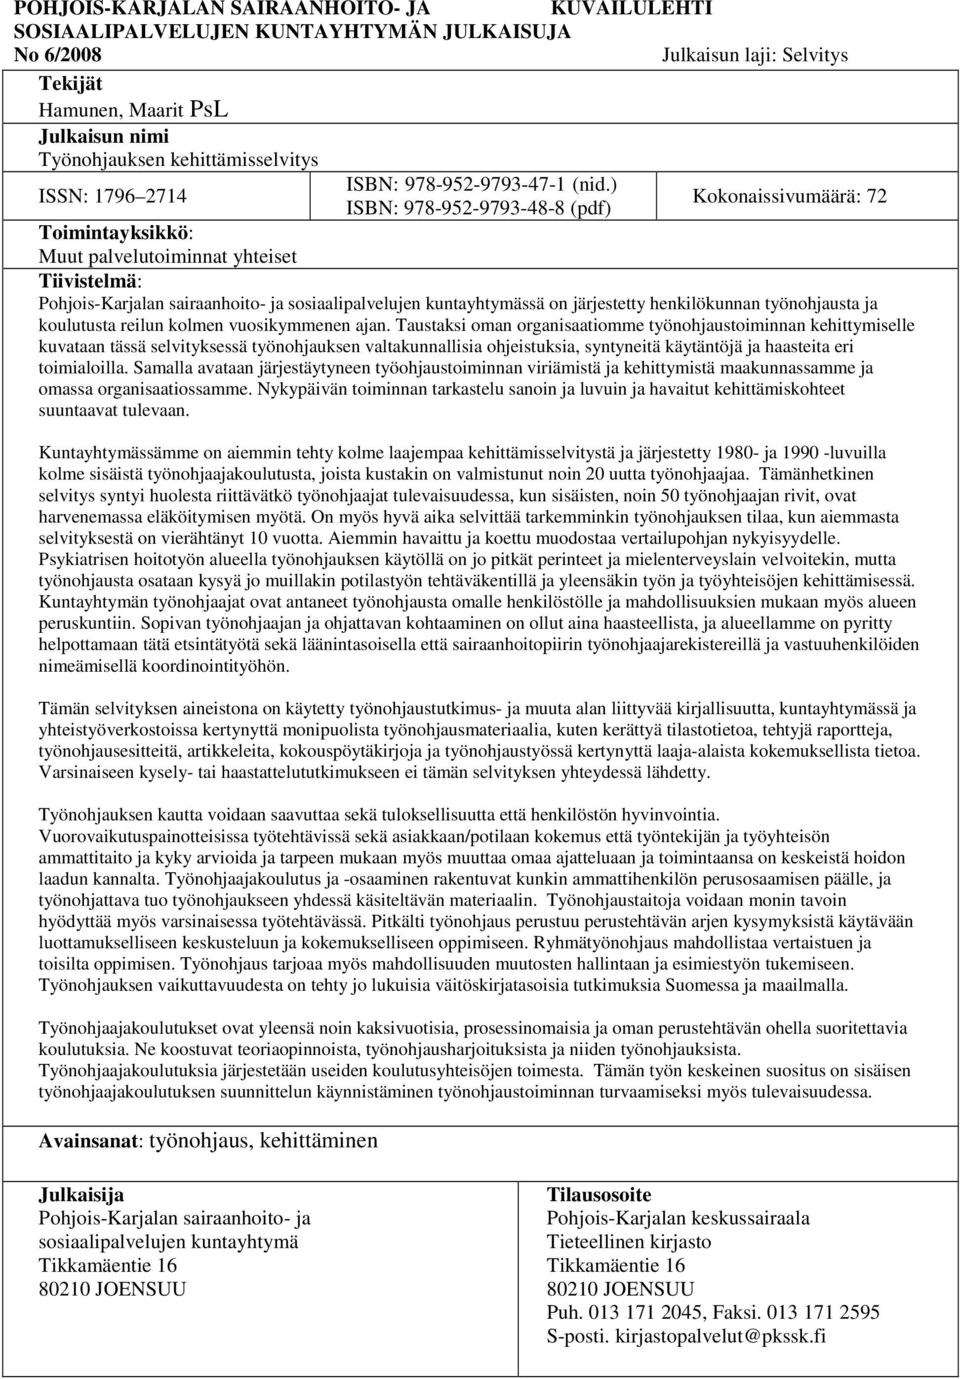 ) ISBN: 978-952-9793-48-8 (pdf) Kokonaissivumäärä: 72 Toimintayksikkö: Muut palvelutoiminnat yhteiset Tiivistelmä: Pohjois-Karjalan sairaanhoito- ja sosiaalipalvelujen kuntayhtymässä on järjestetty